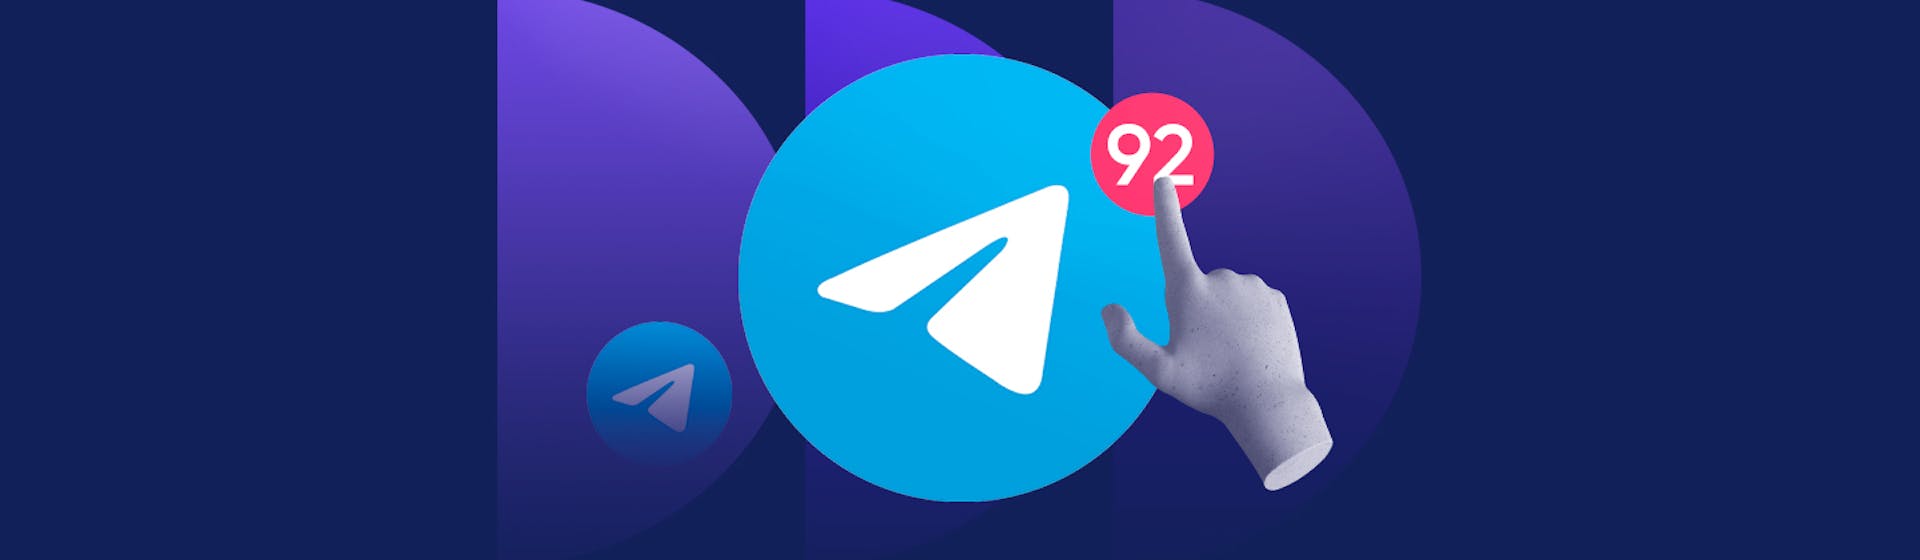 30 trucos de Telegram que debes saber para sacarle el máximo provecho a esta app de mensajería